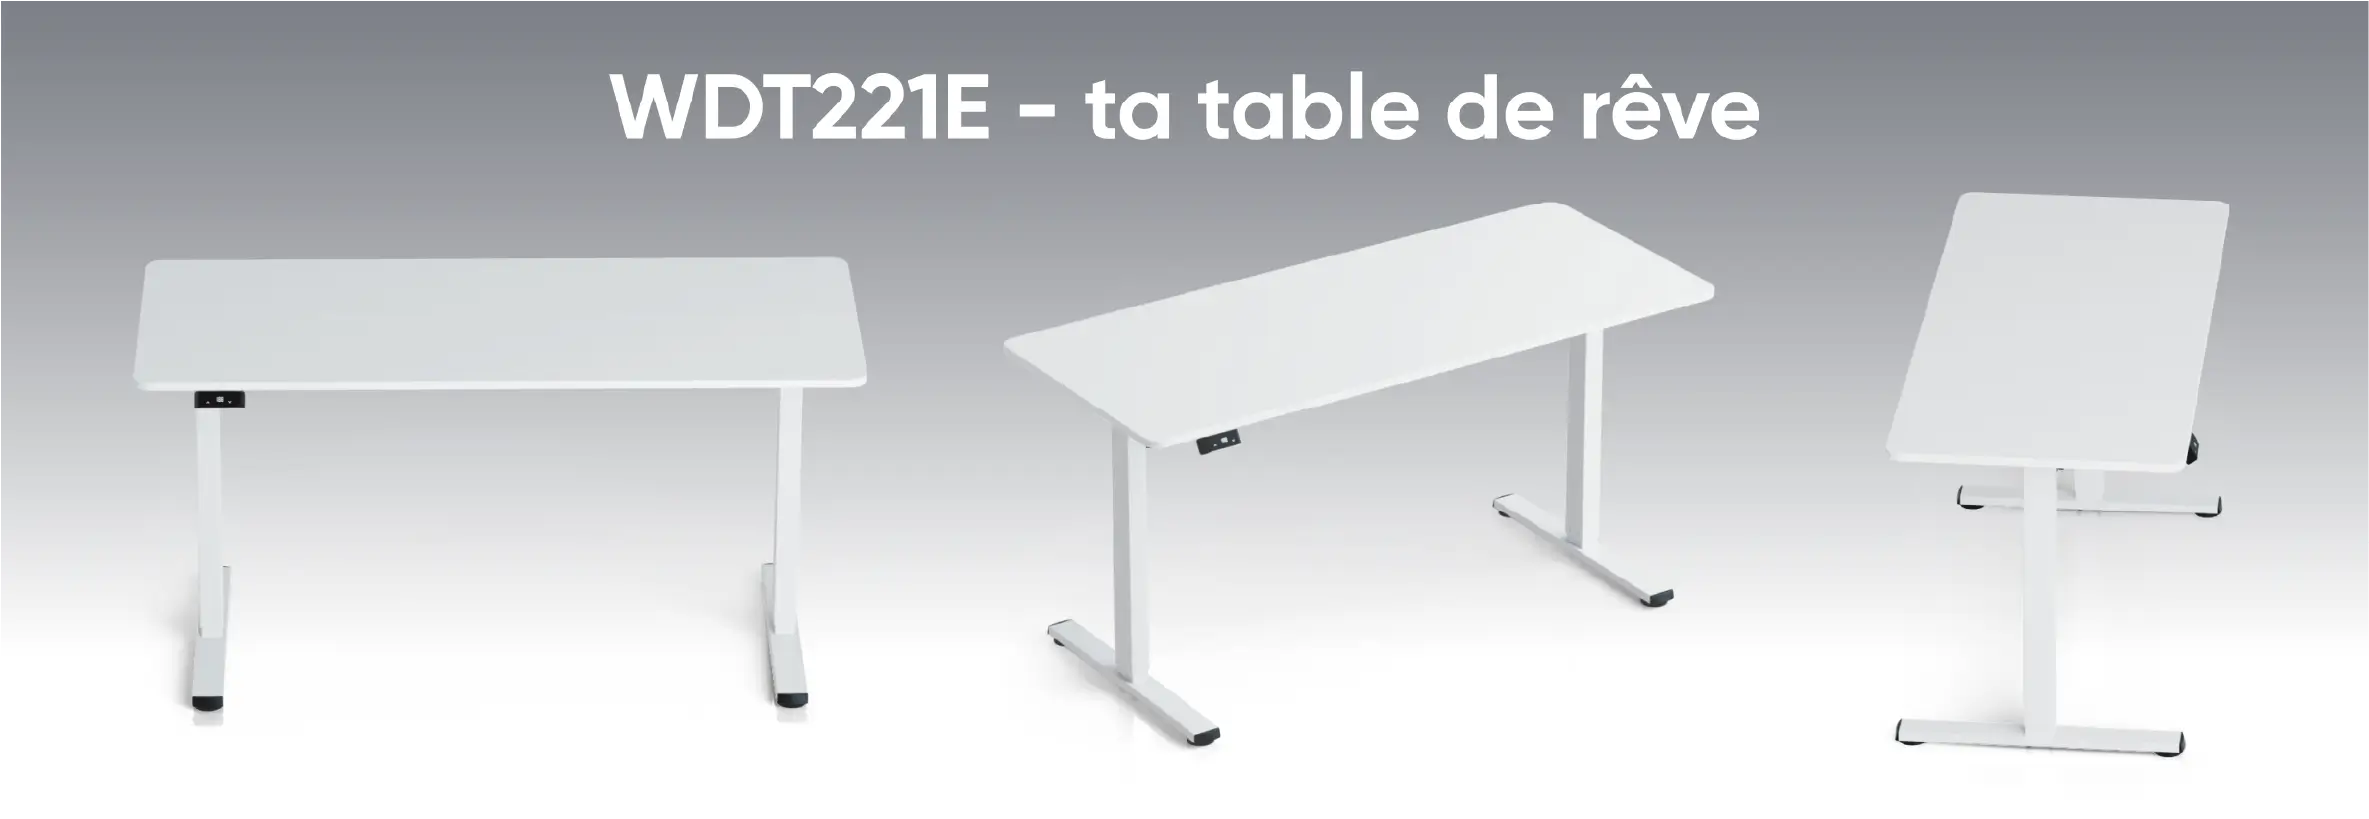 WDT221E - ta table de rêve